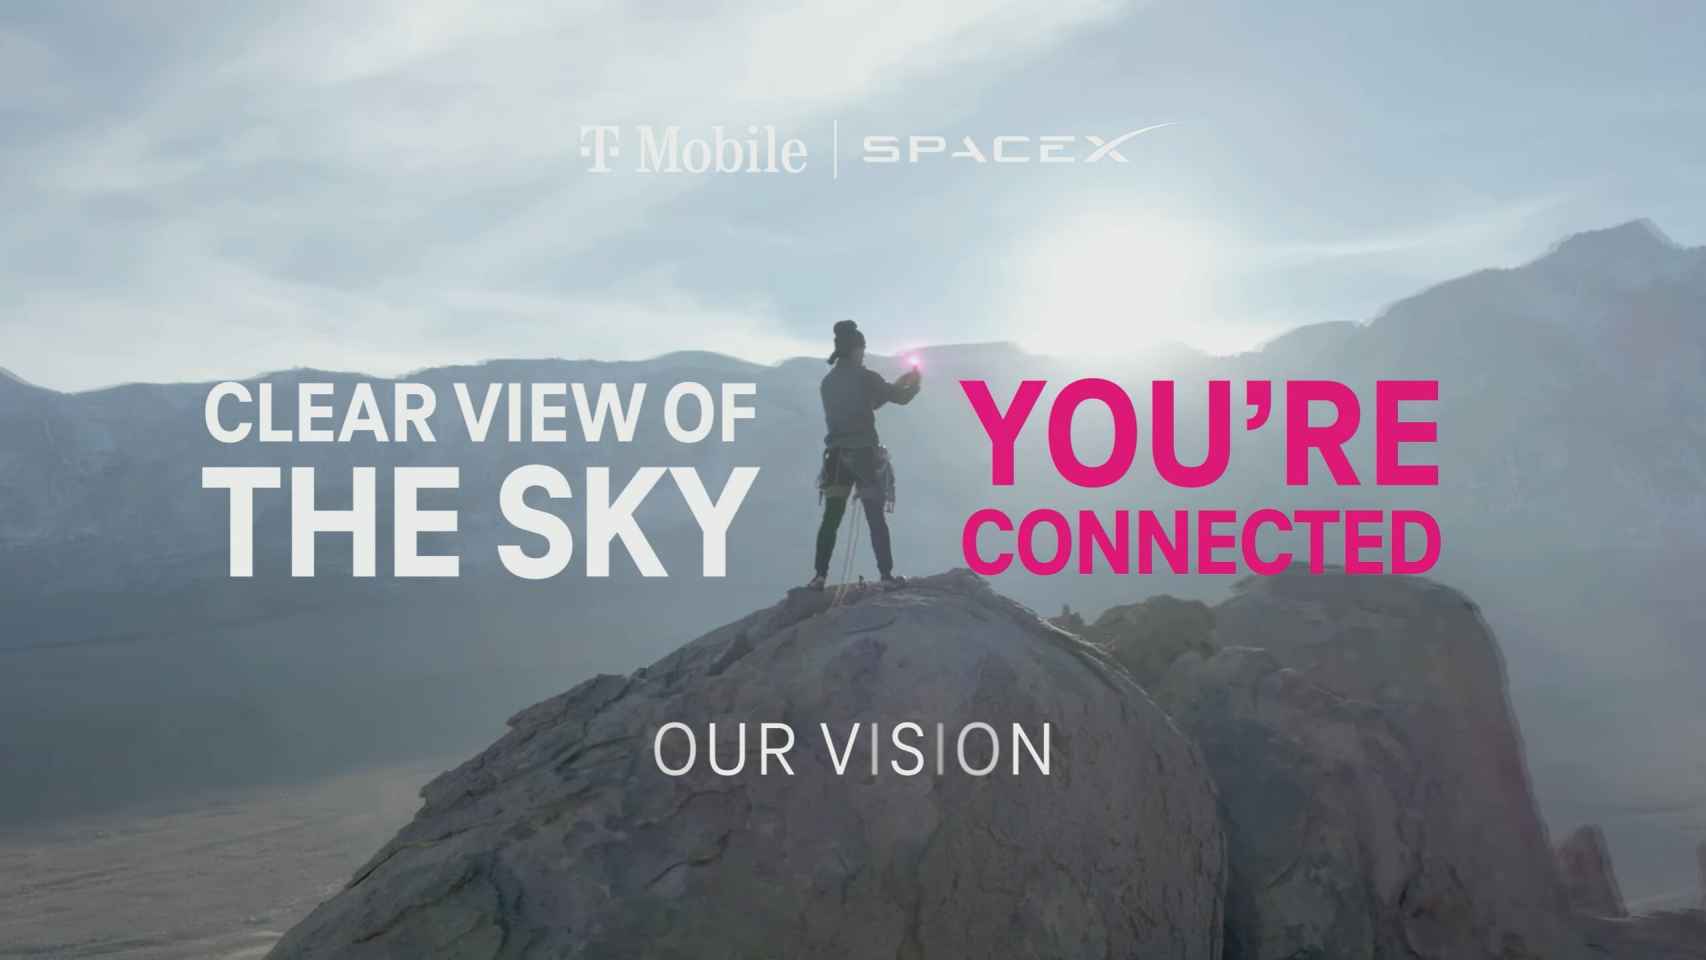 Campaña publicitaria de SpaceX y T-Mobile